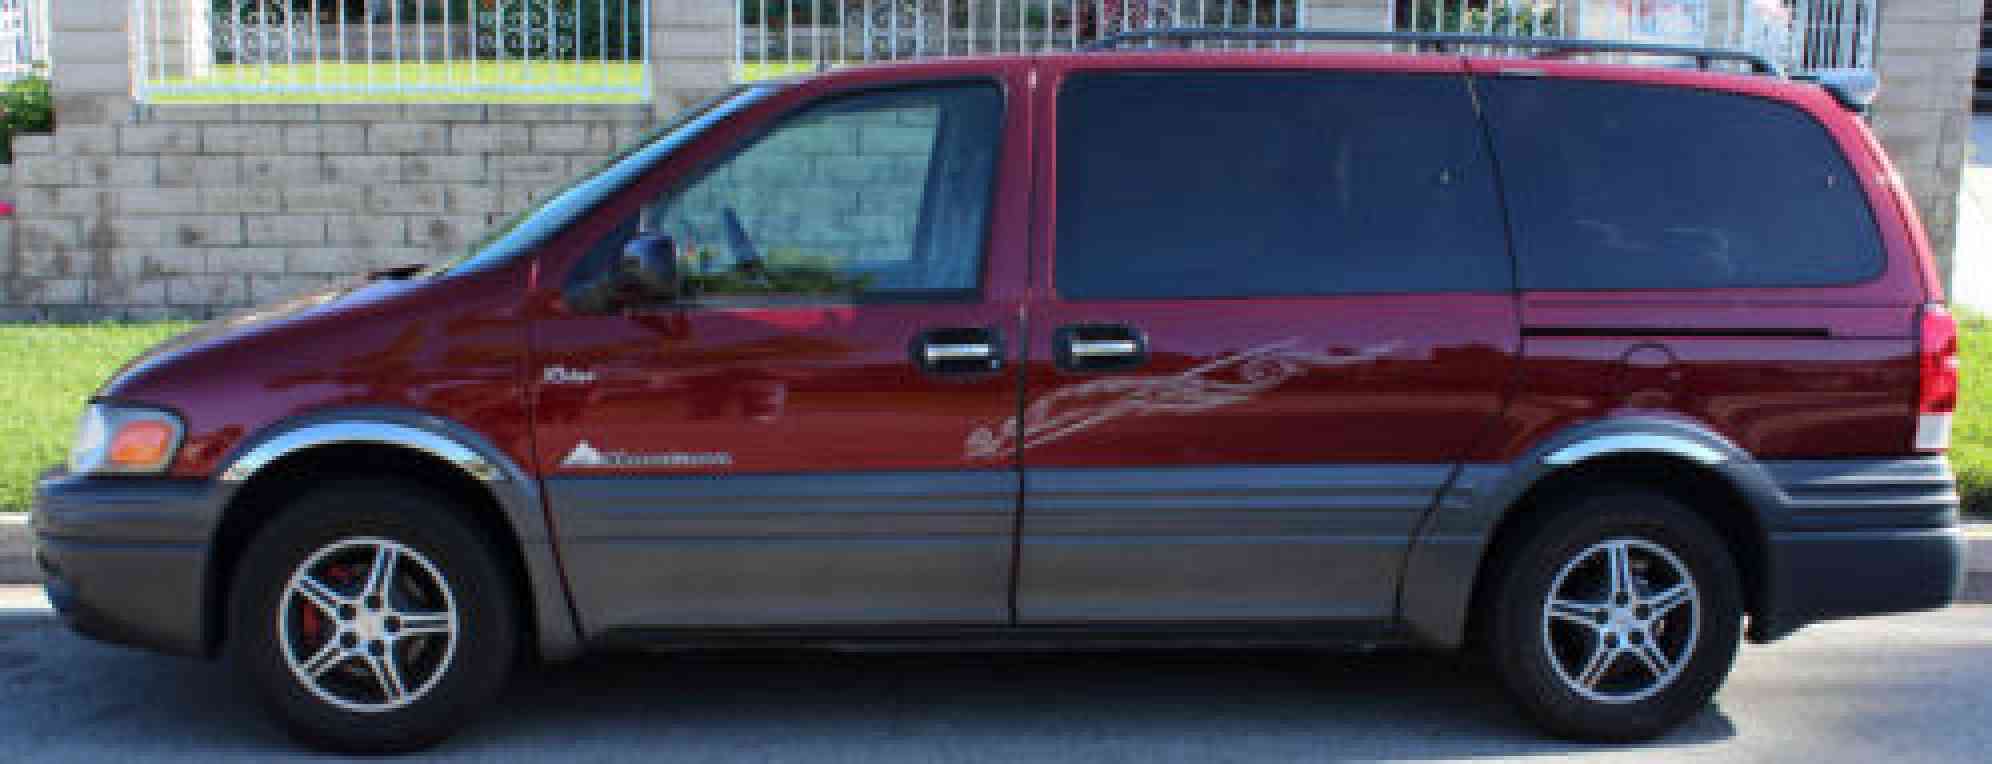 Pontiac Montana (2002)